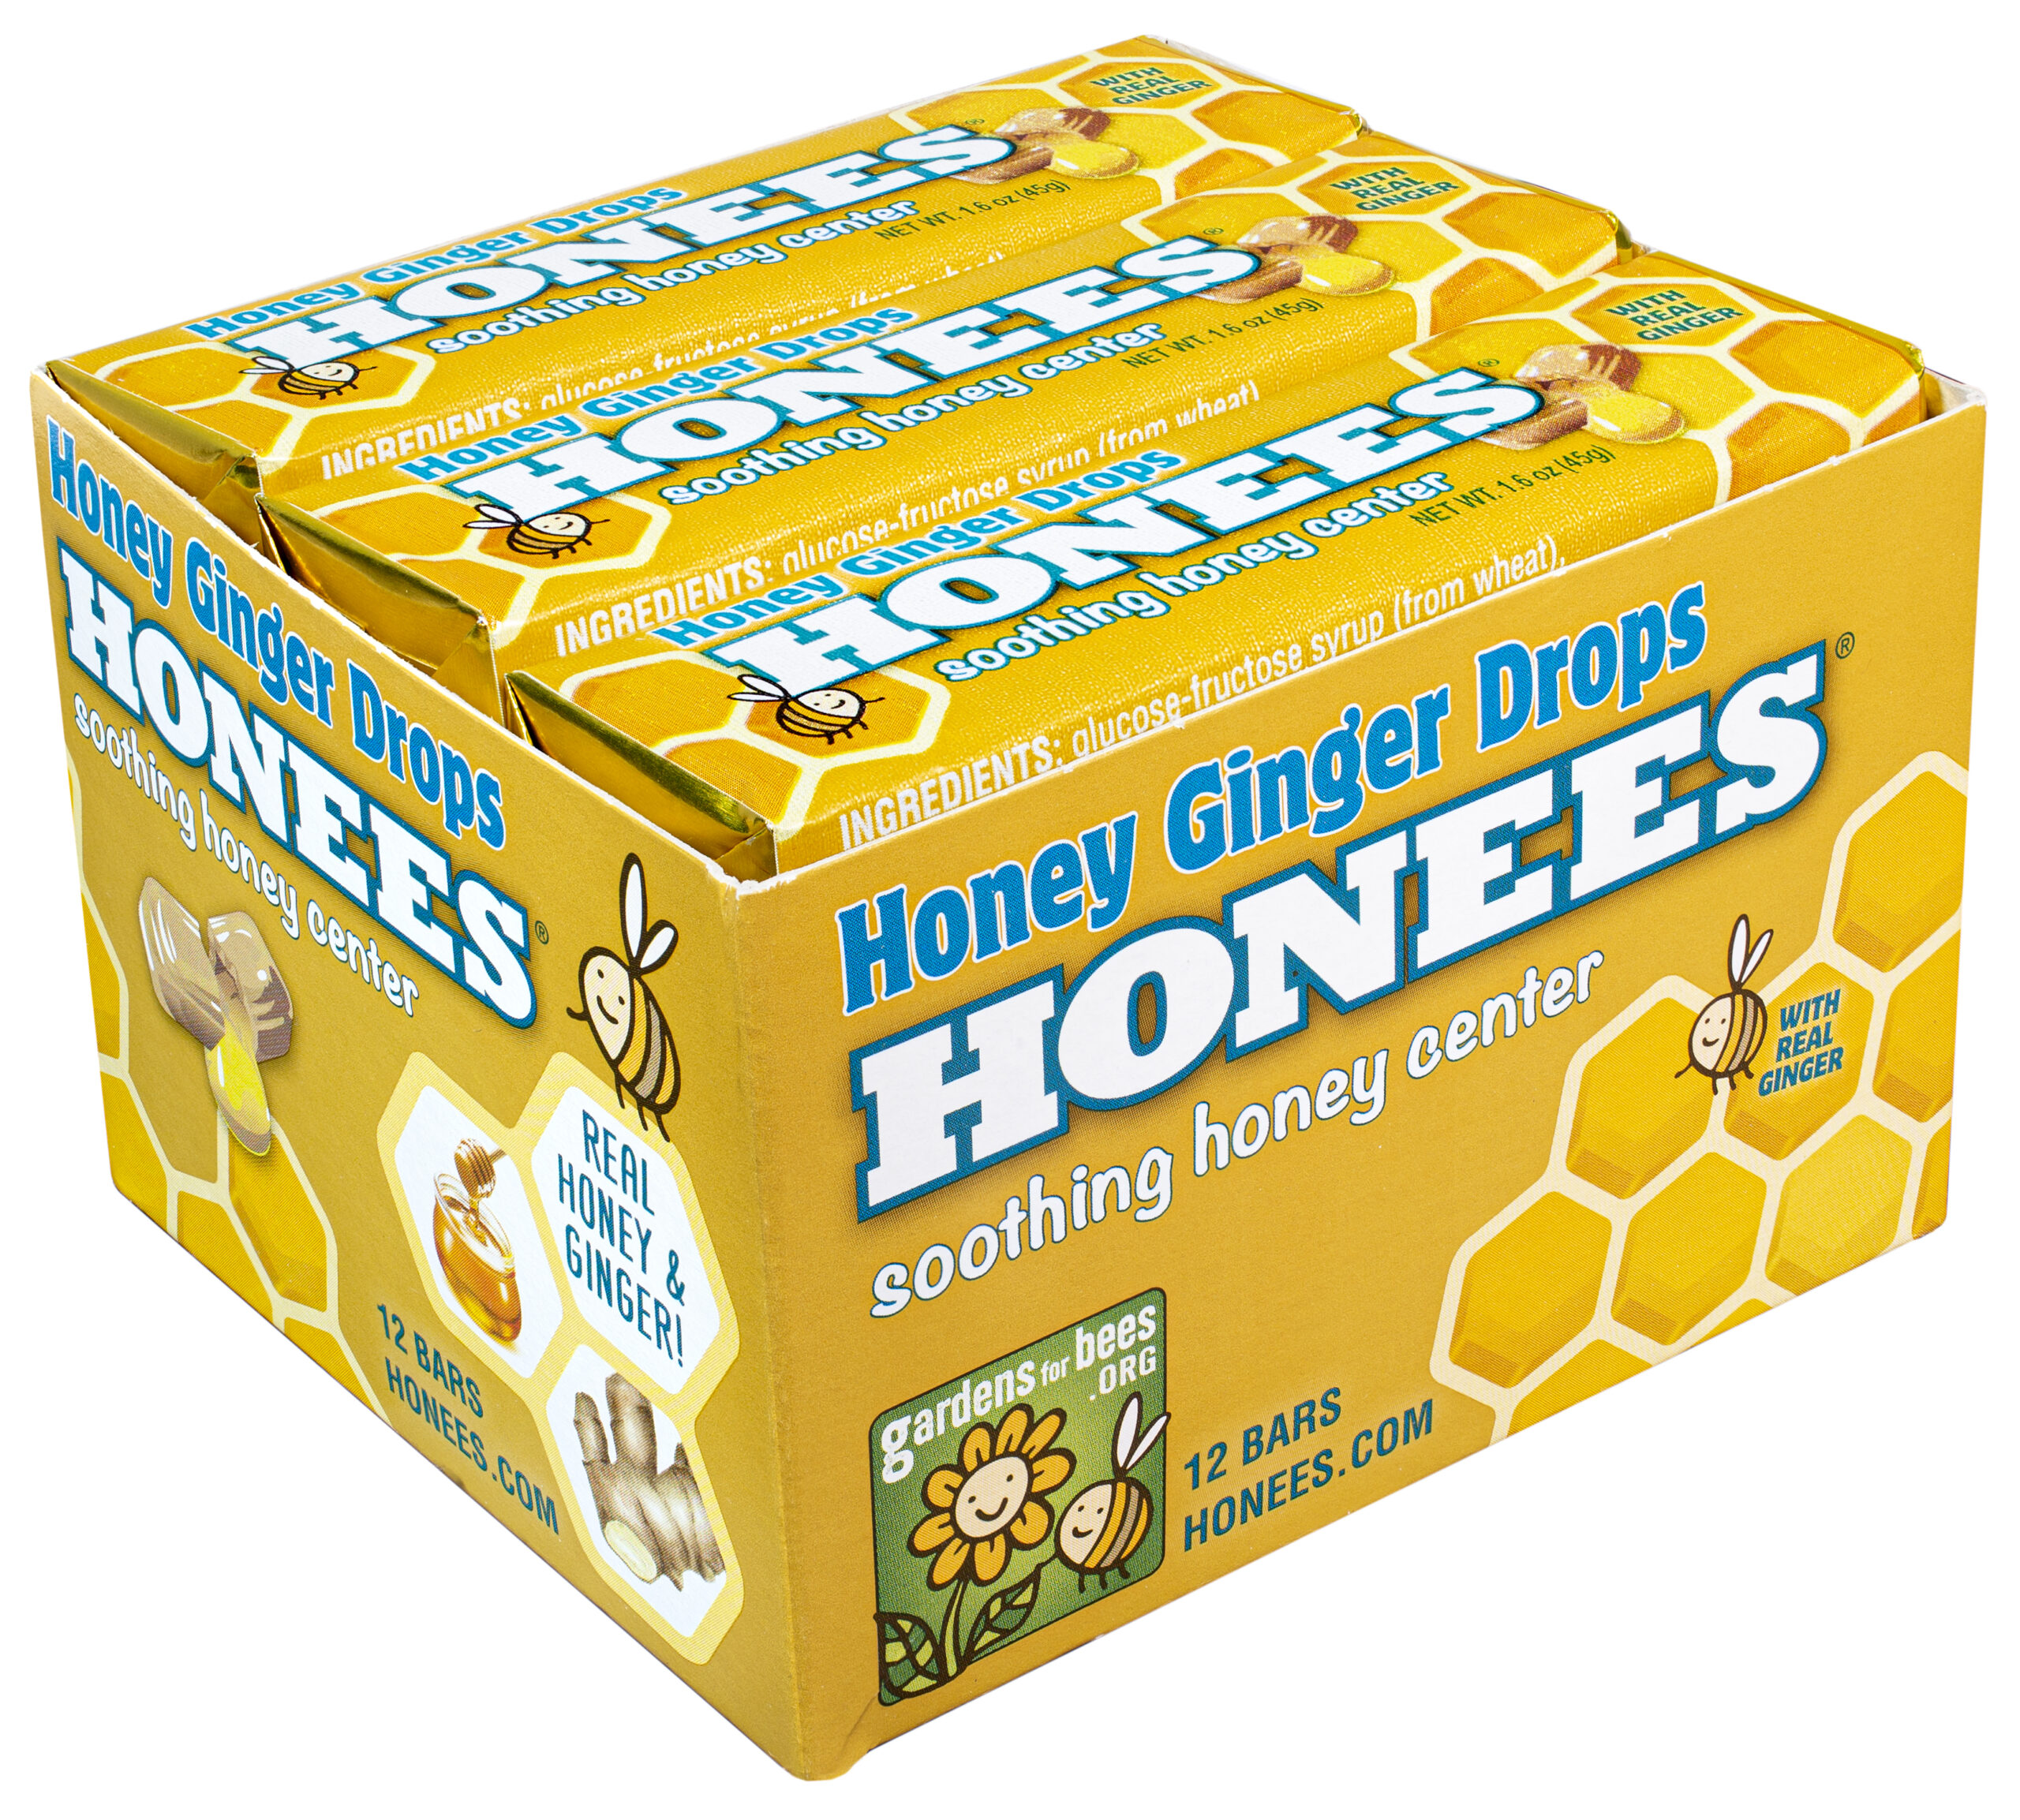 Honees 0460 Bars